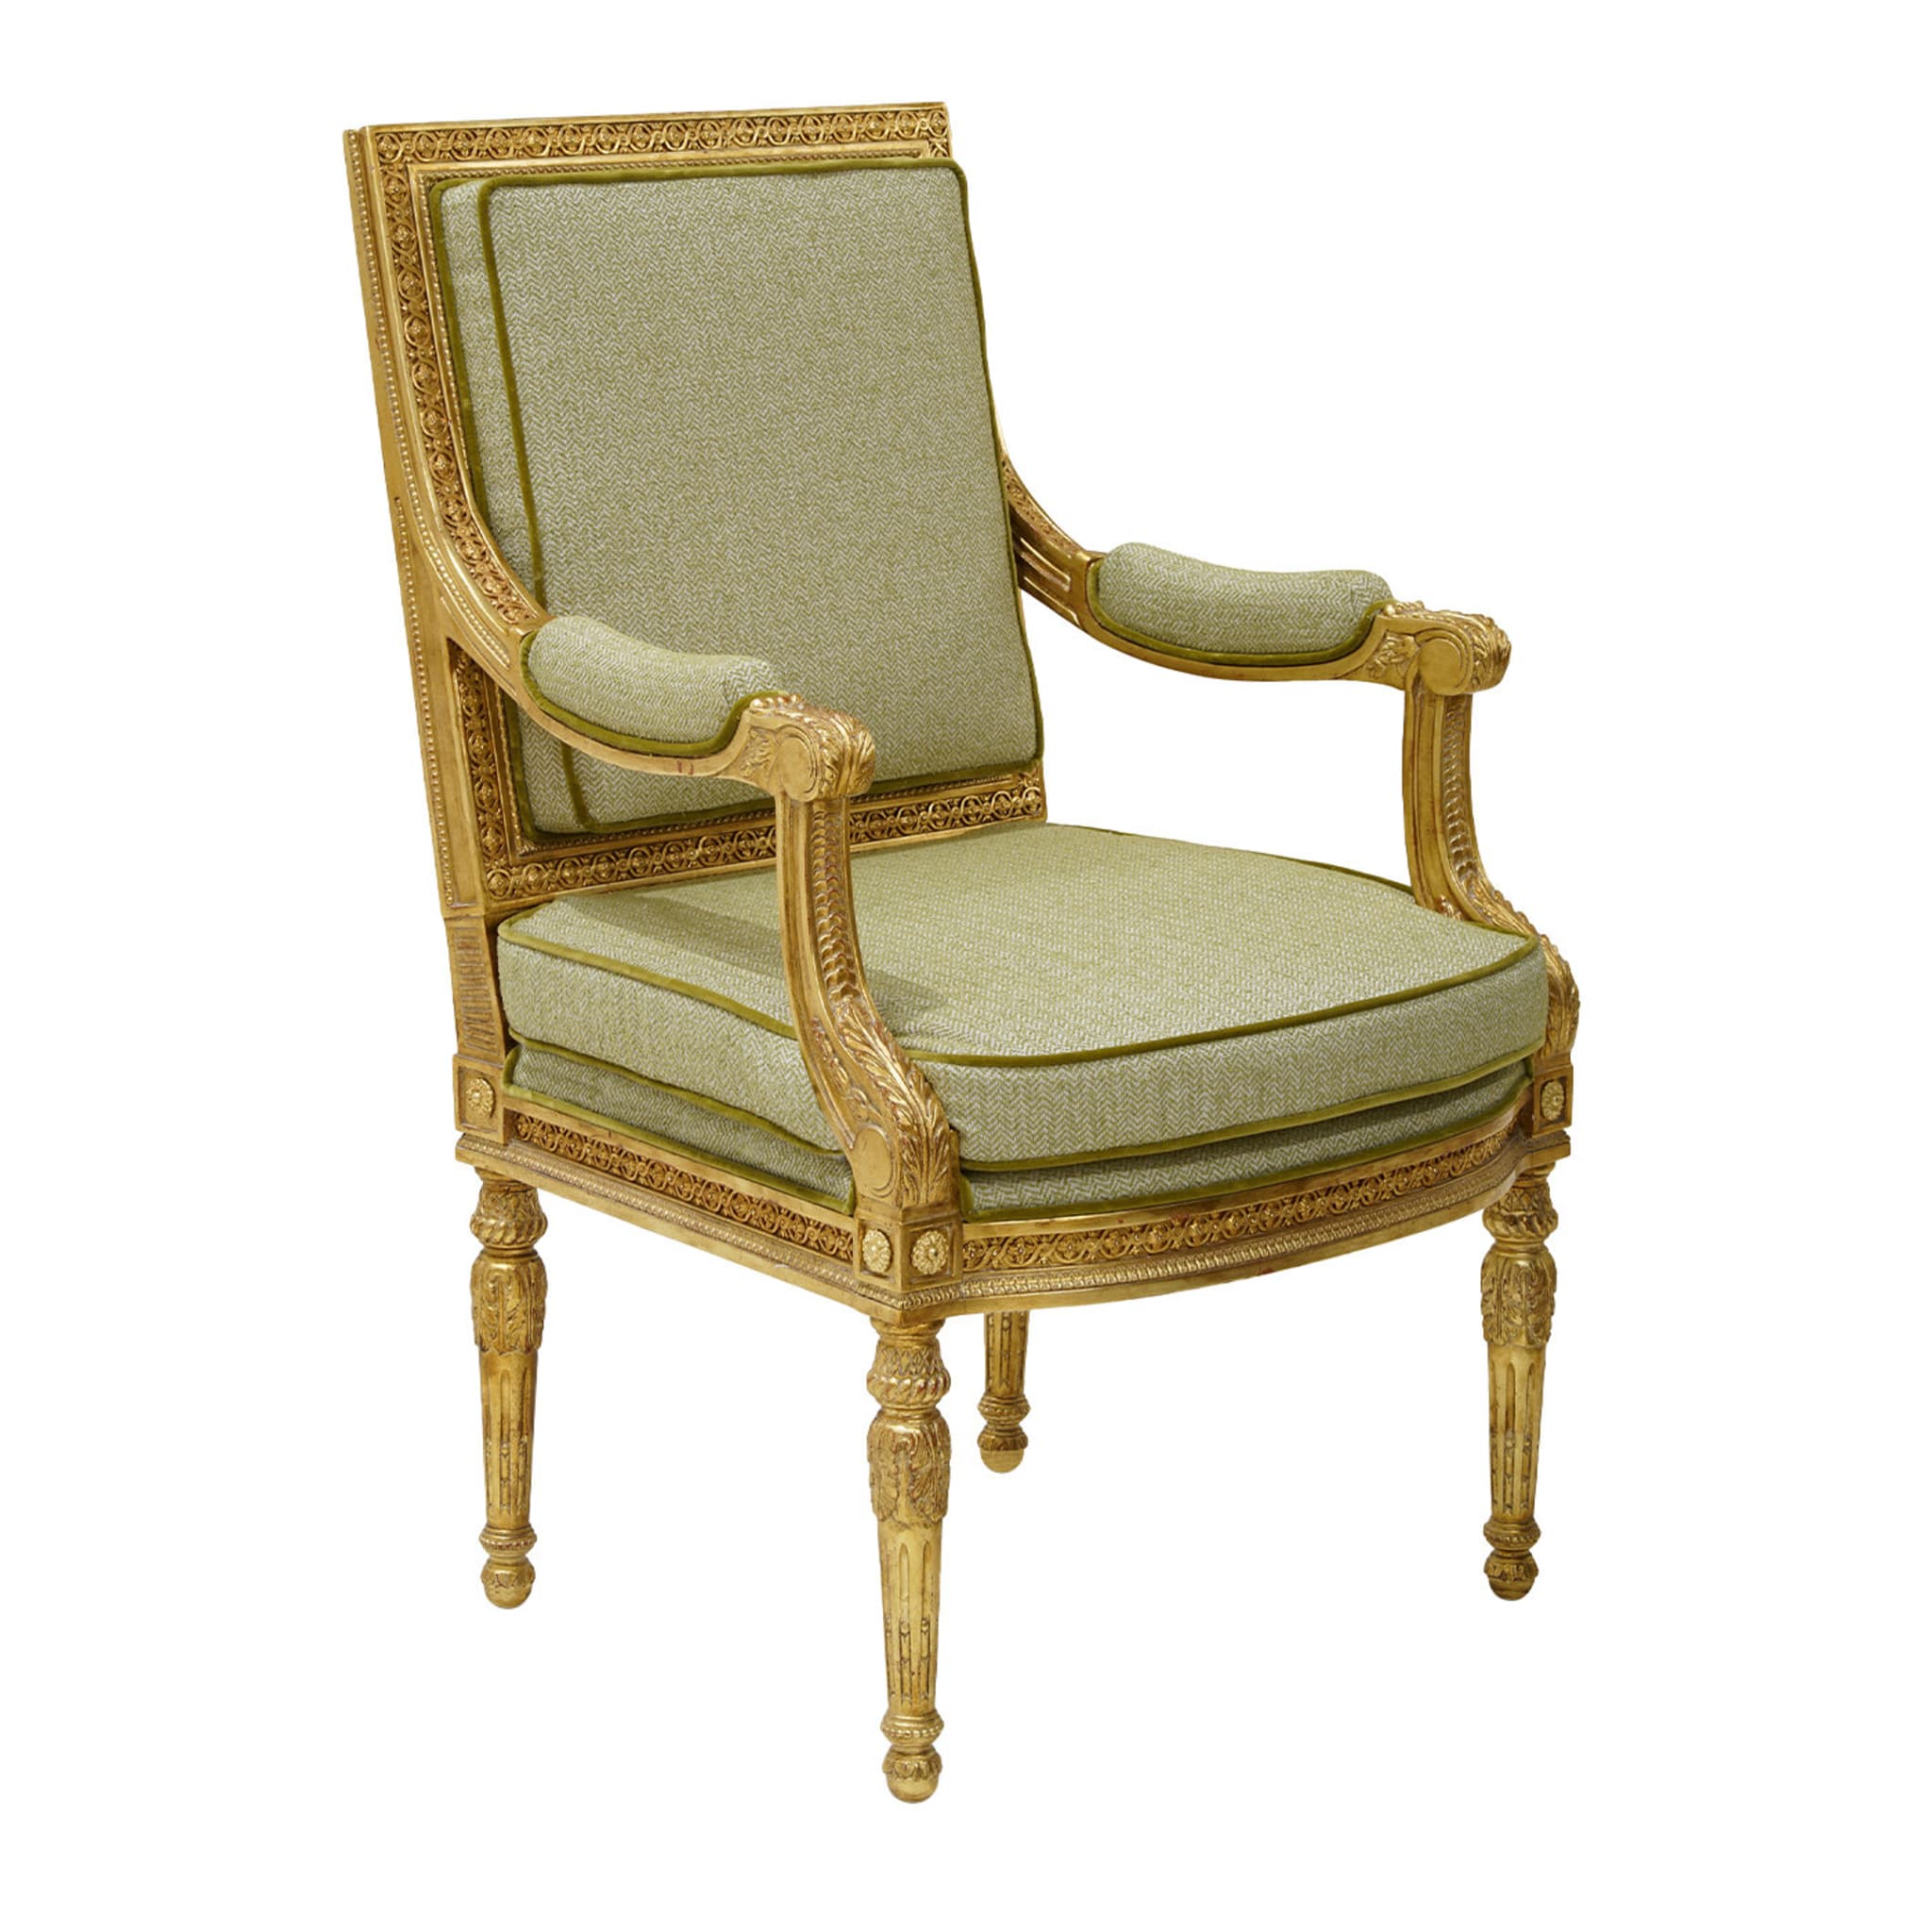 Louis XVI Style Chair #1 - Main view